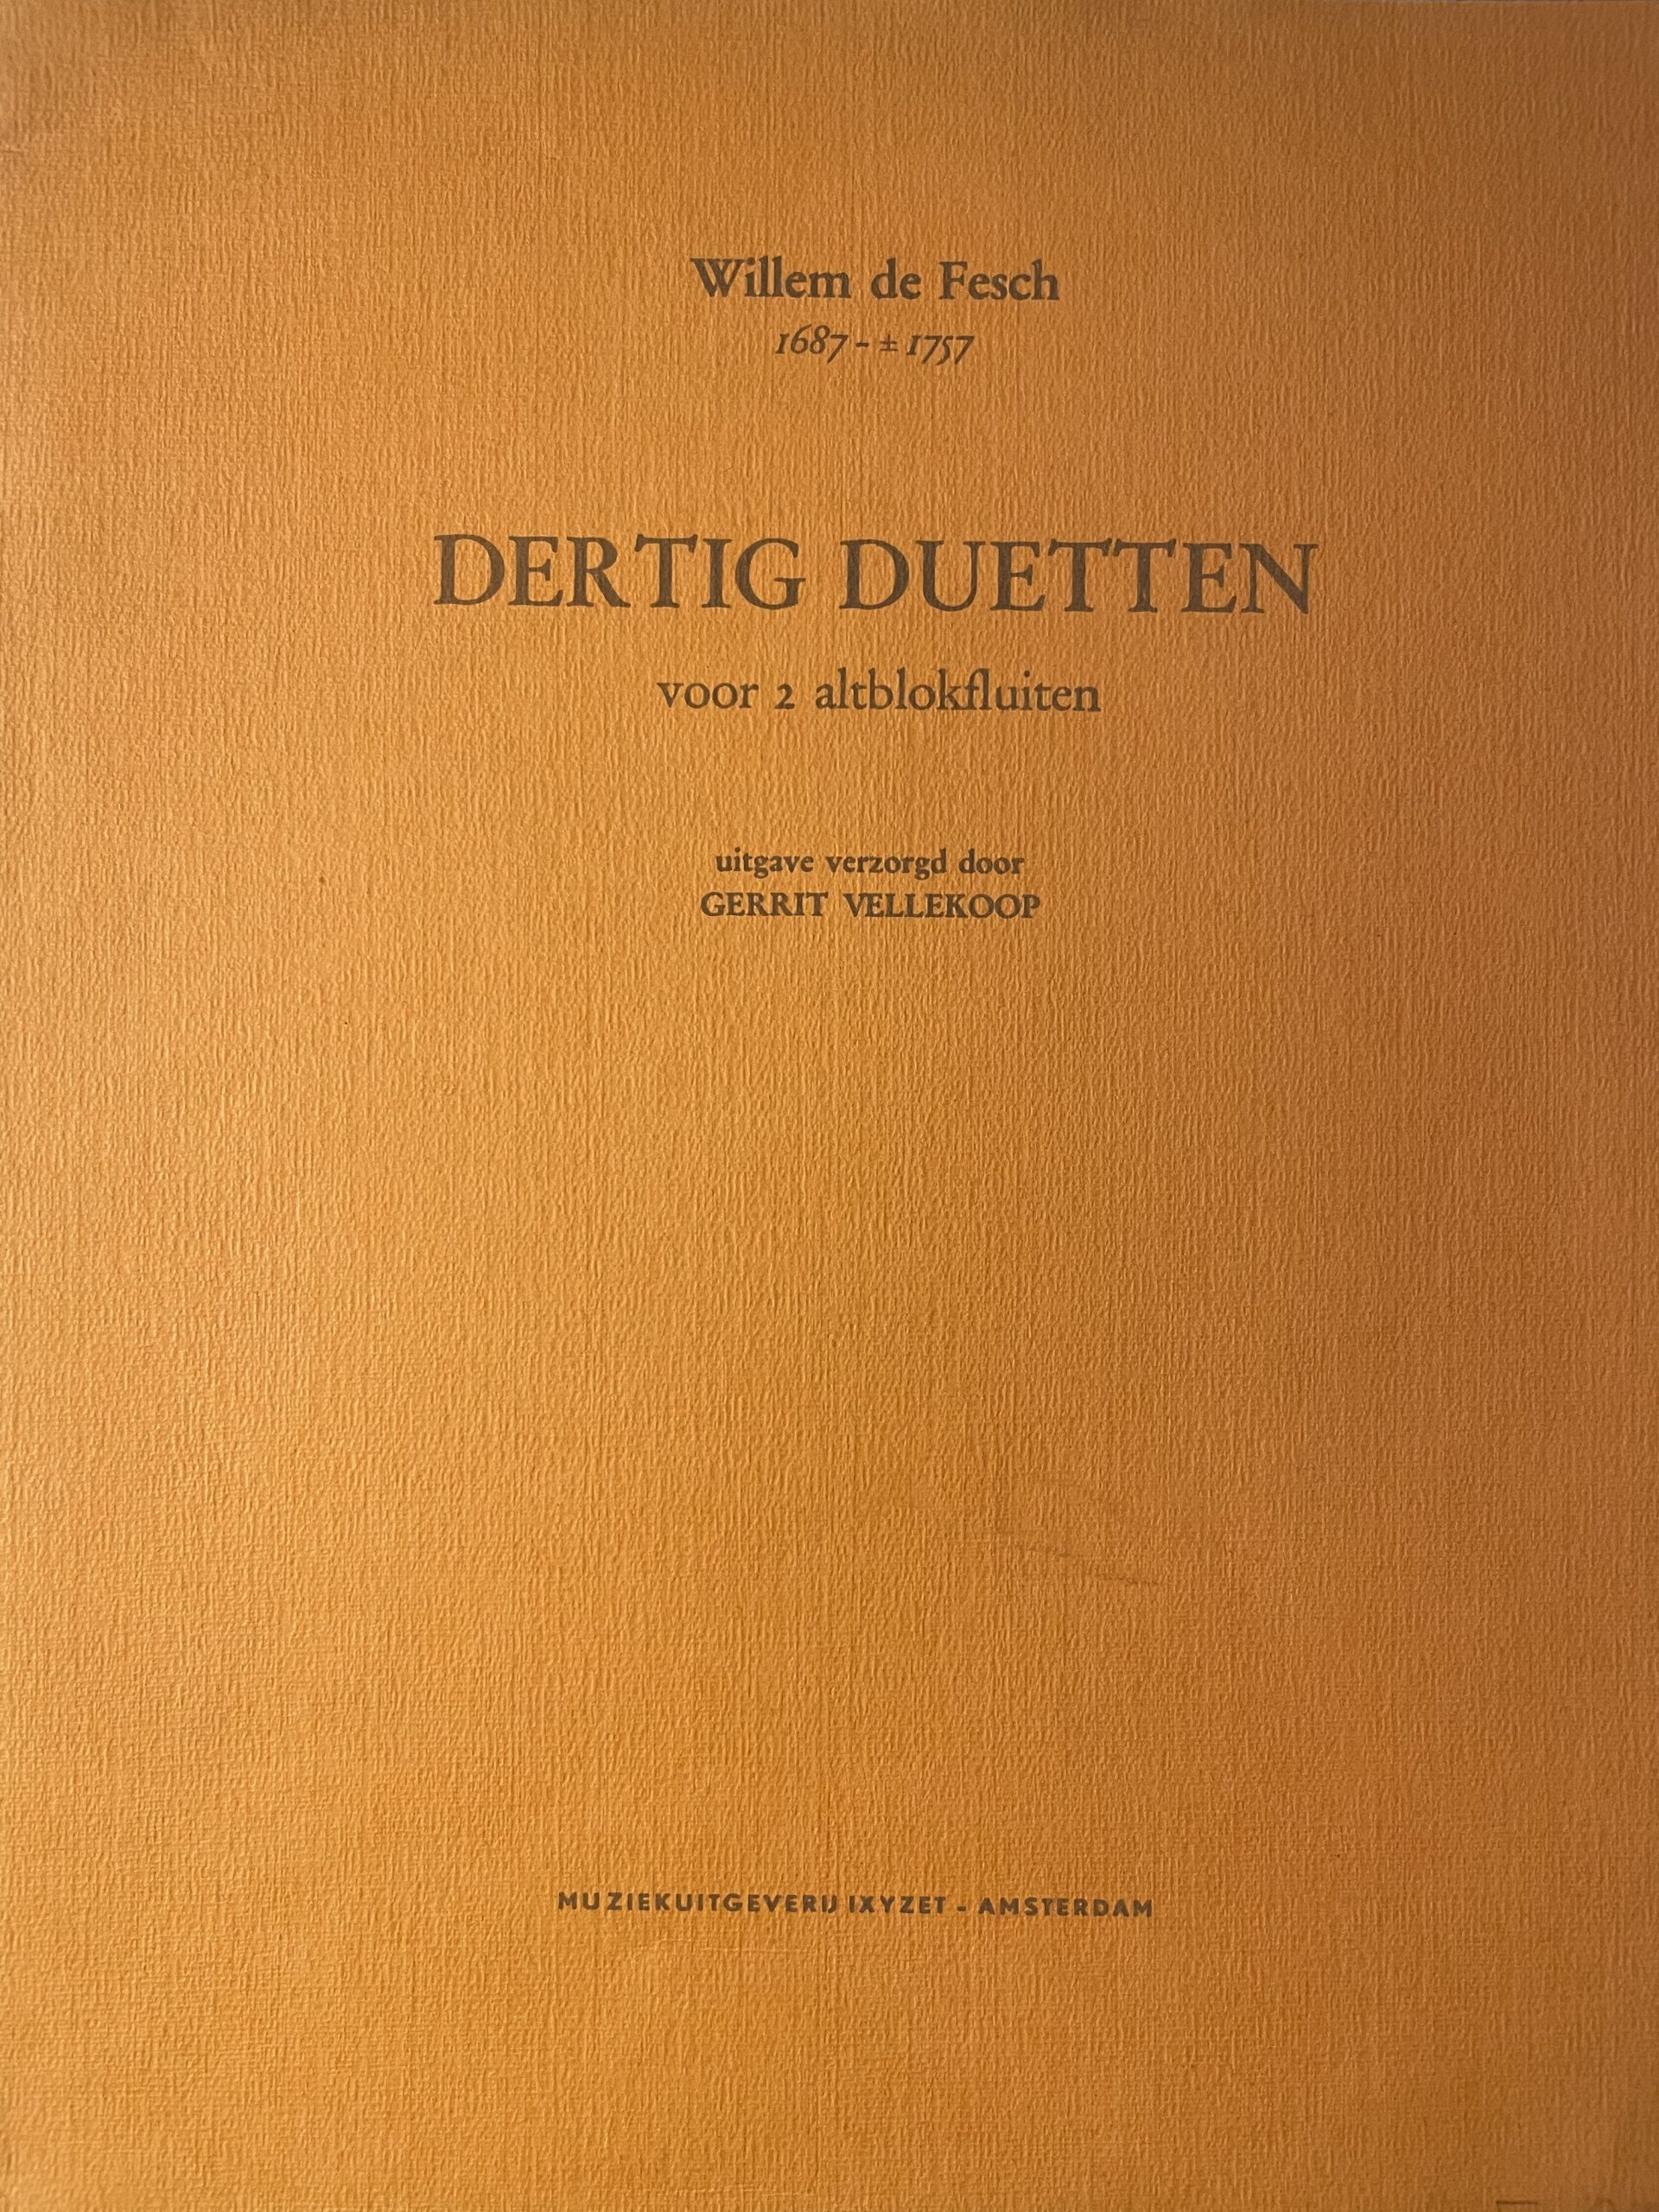 Dertig duetten - Gerrit Vellekoop - Deel 1